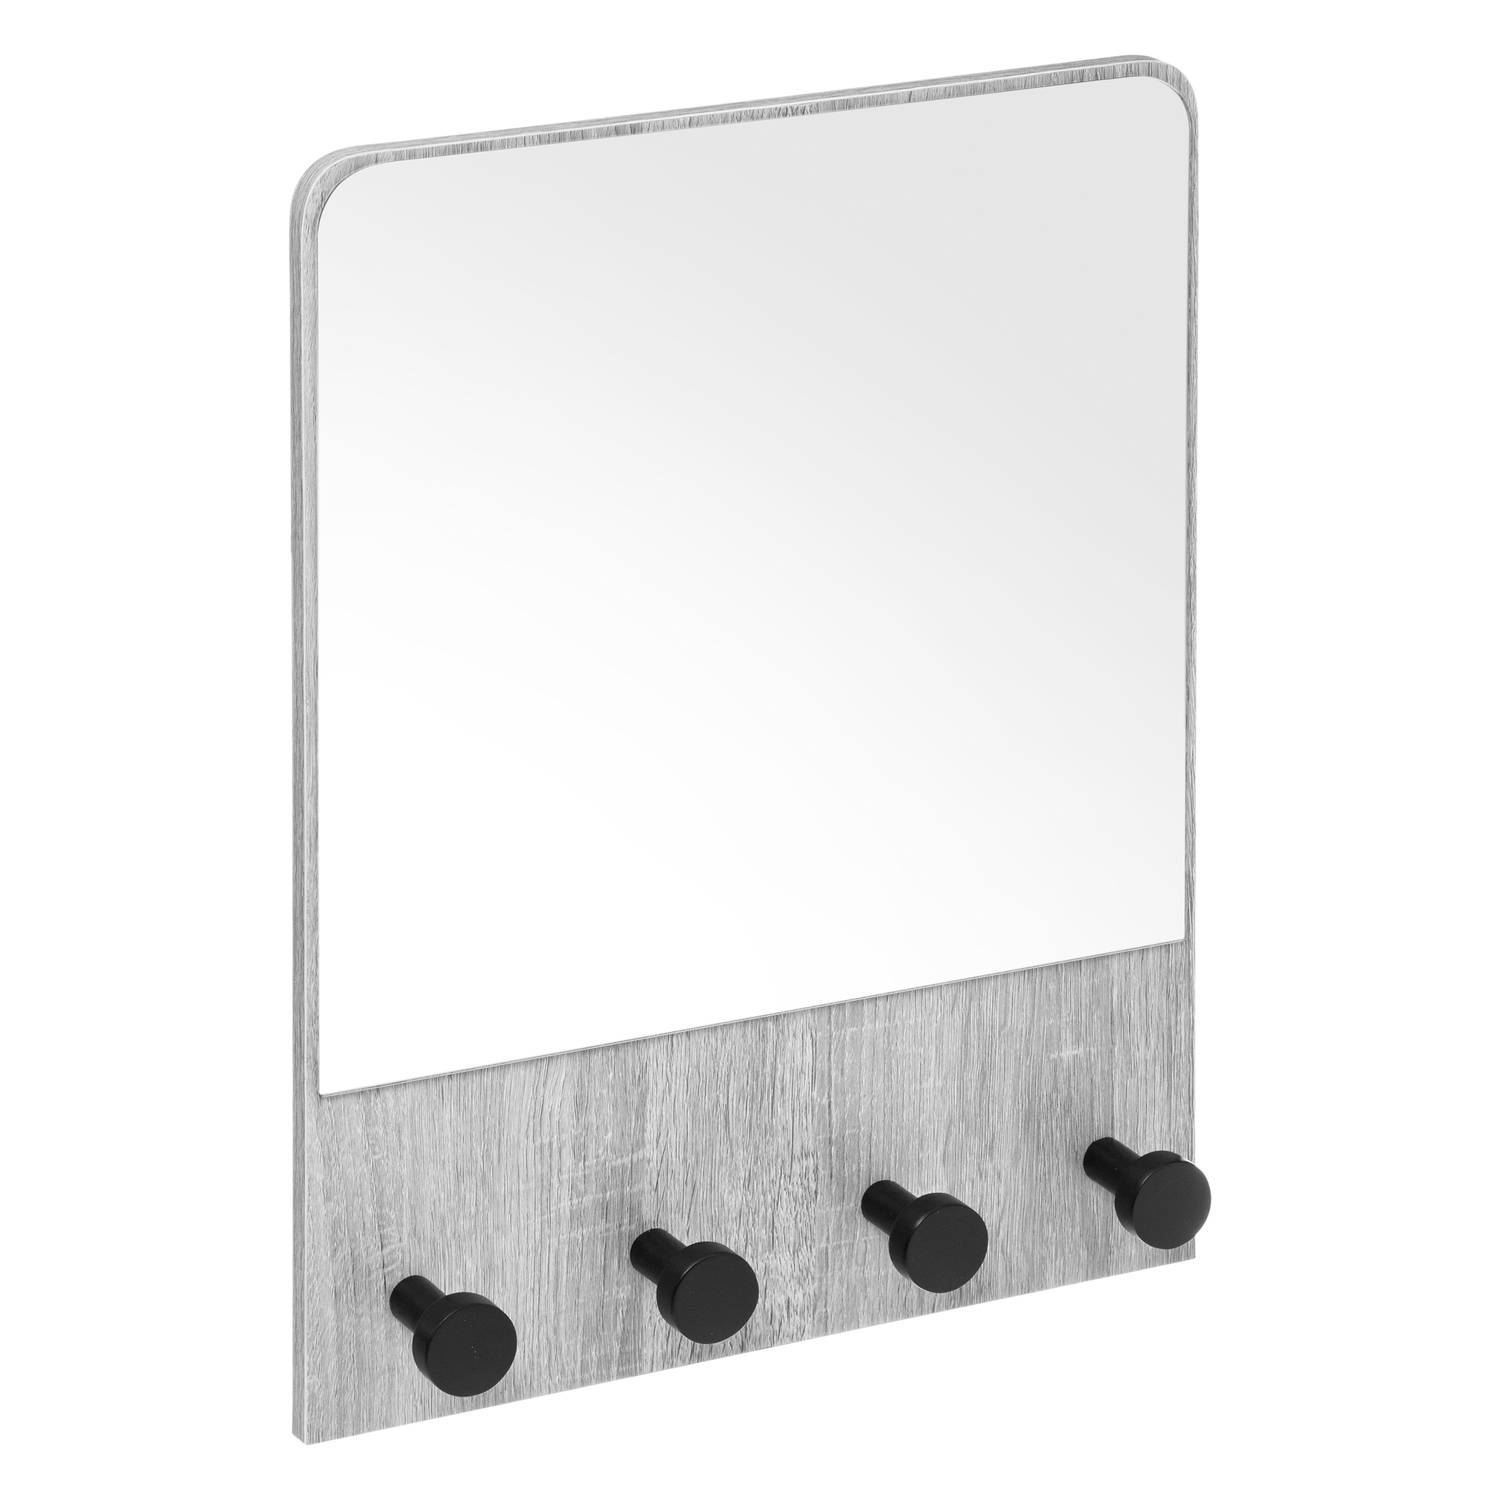 4goodz Kapstok met spiegel met 4 haken 37x6x50 cm - Kleur grijs eiken